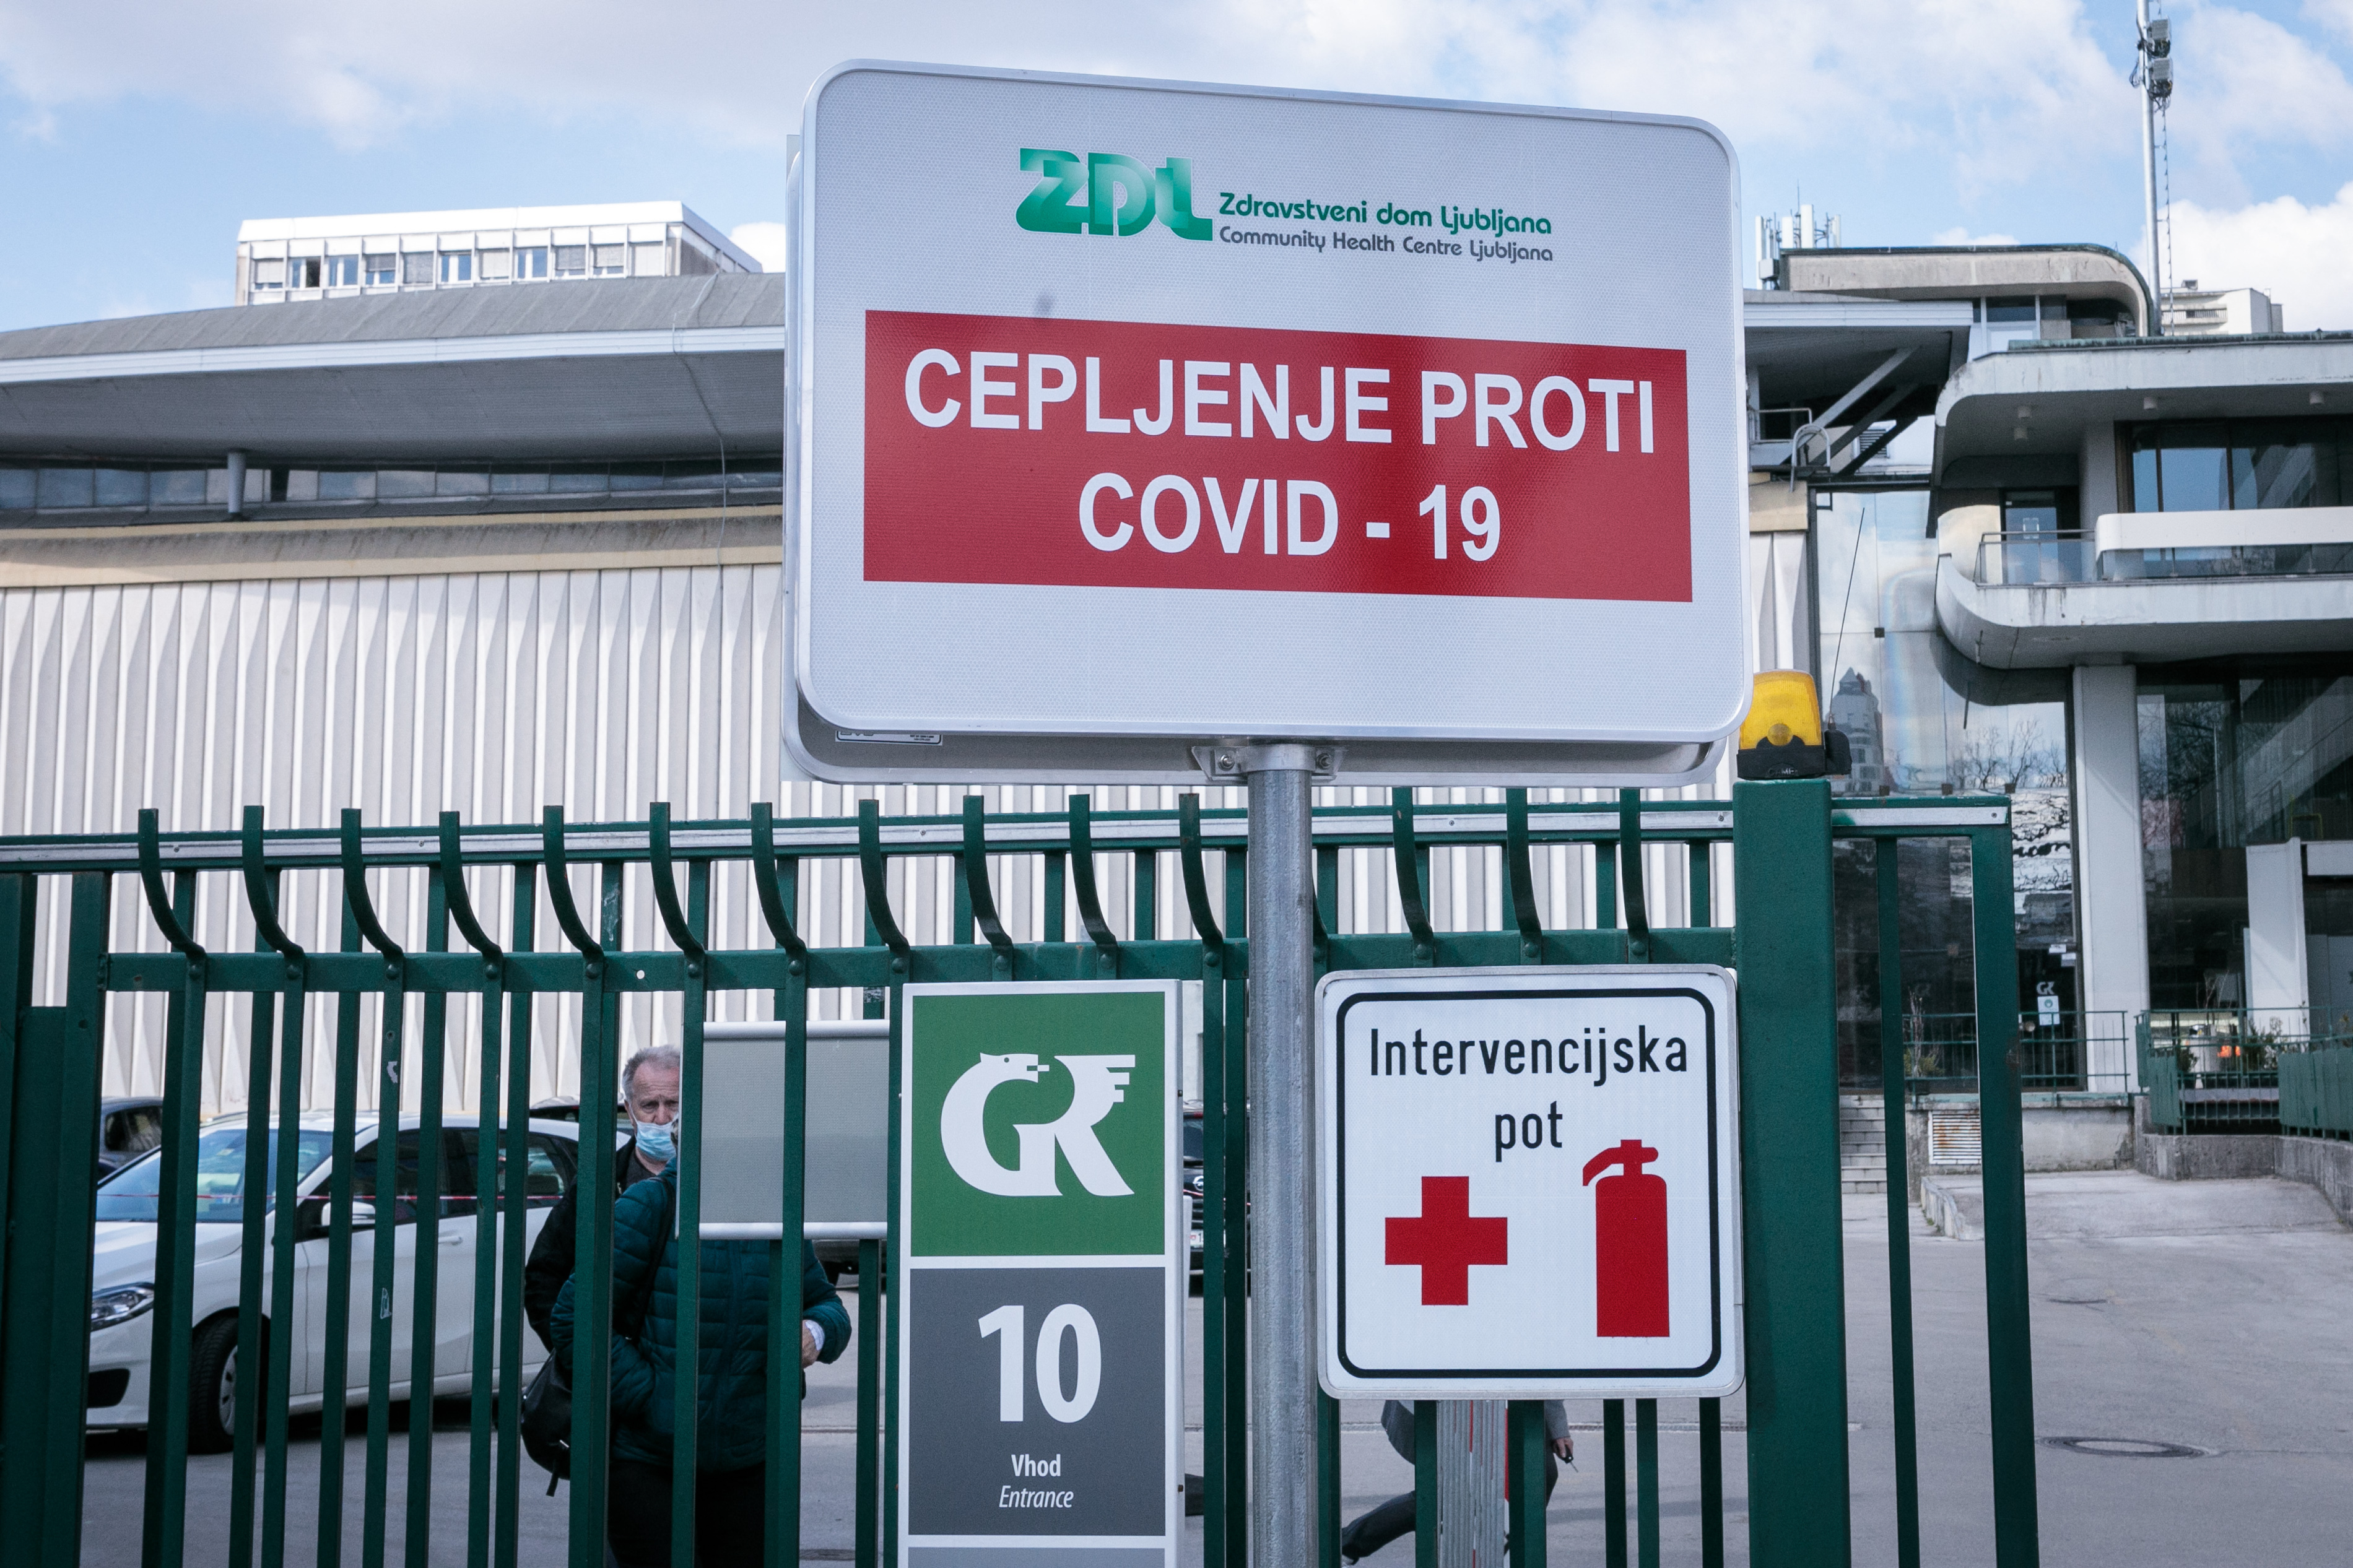 Szlovéniában is megjelent a koronavírus indiai variánsa